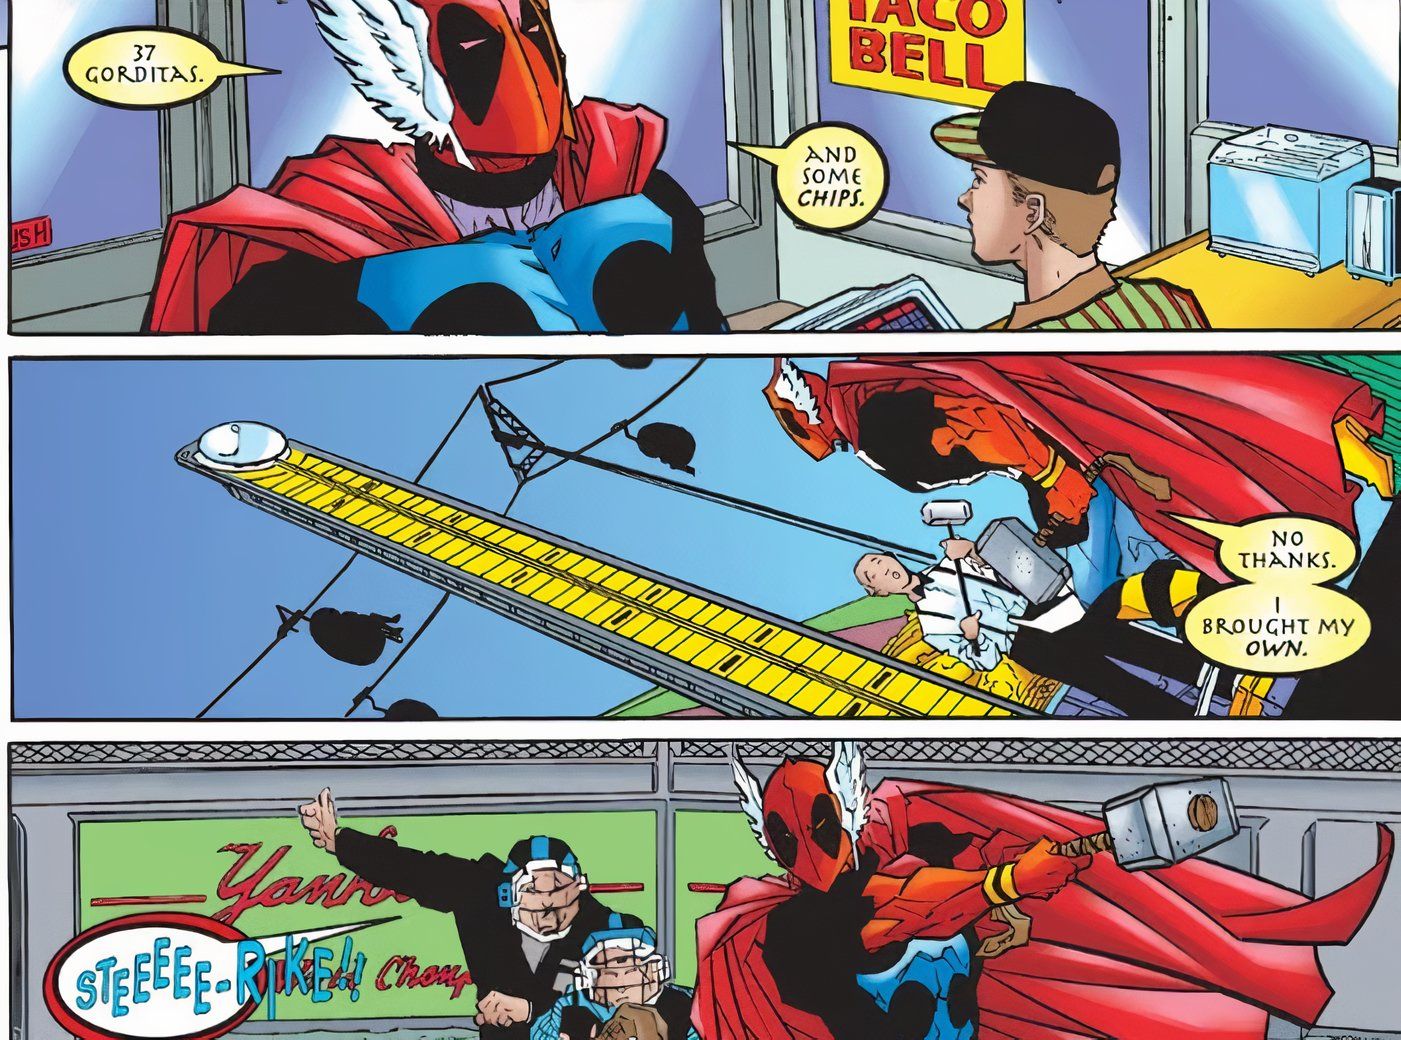 Deadpool lifting Thor's hammer (fake hammer Loki)